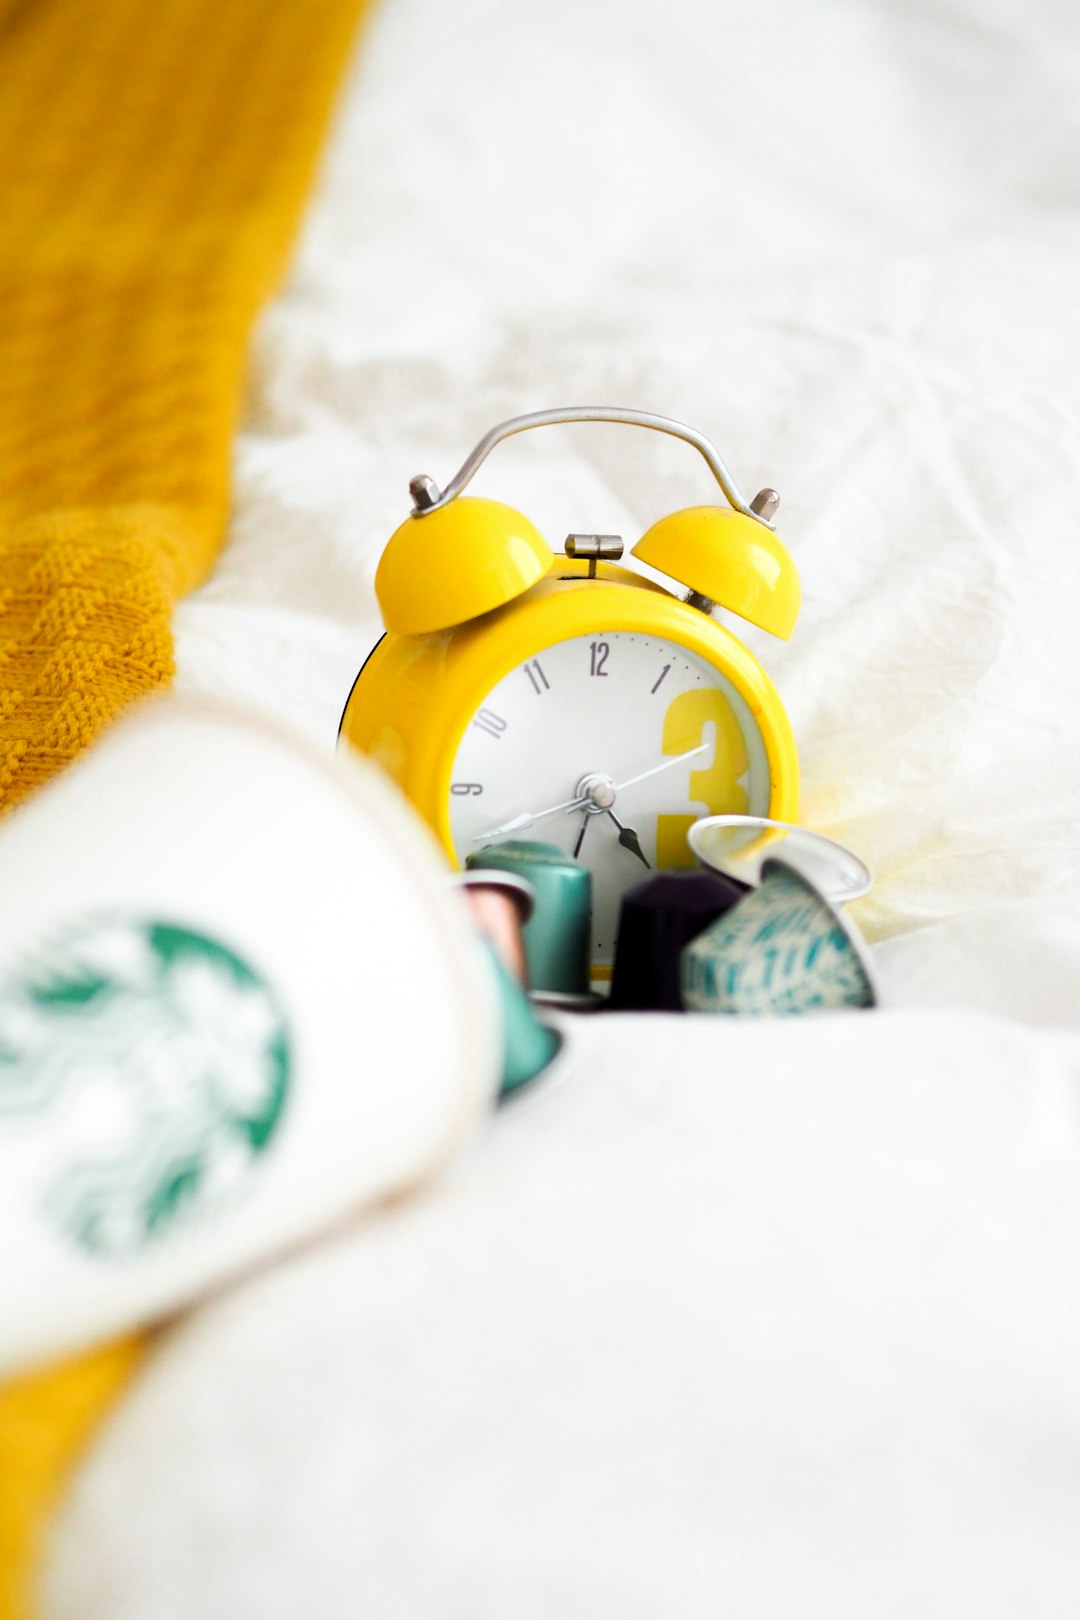 yellow alarm clock beside white ceramic mug